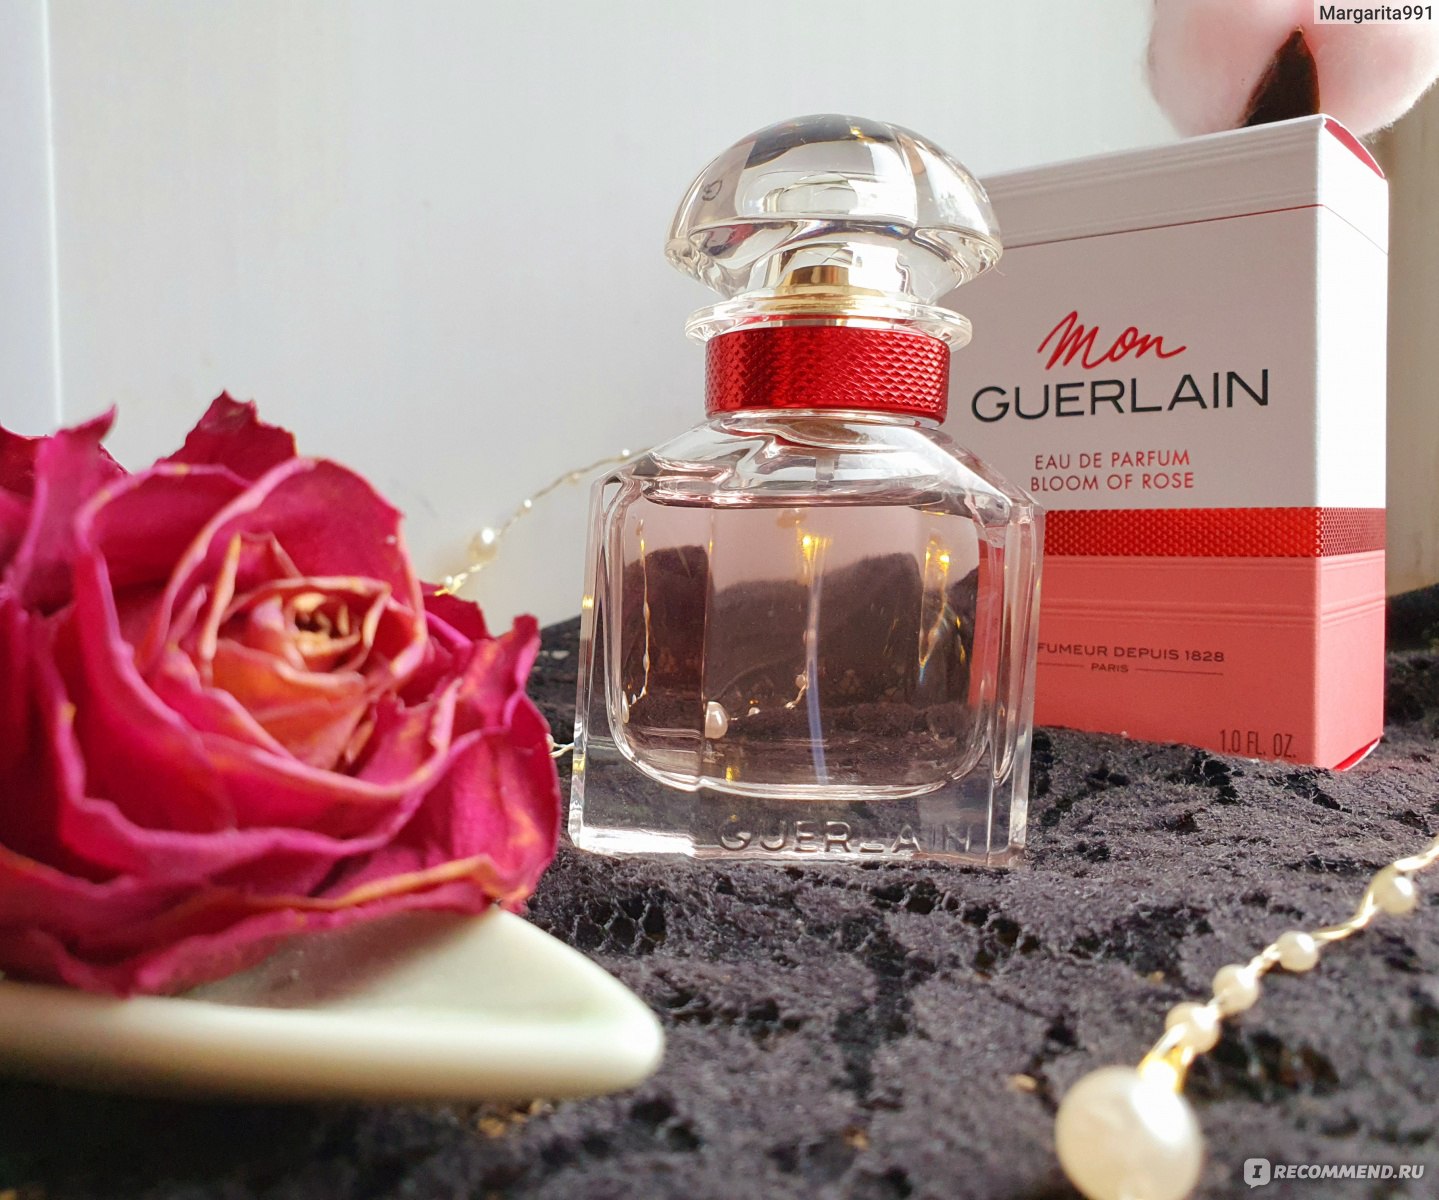 Духи герлен отзывы. Guerlain "mon Guerlain Bloom of Rose" EDP 100 ml. Mon Guerlain Bloom of Rose Eau de Parfum. Guerlain mon Guerlain Bloom. Guerlain mon Guerlain EDP.